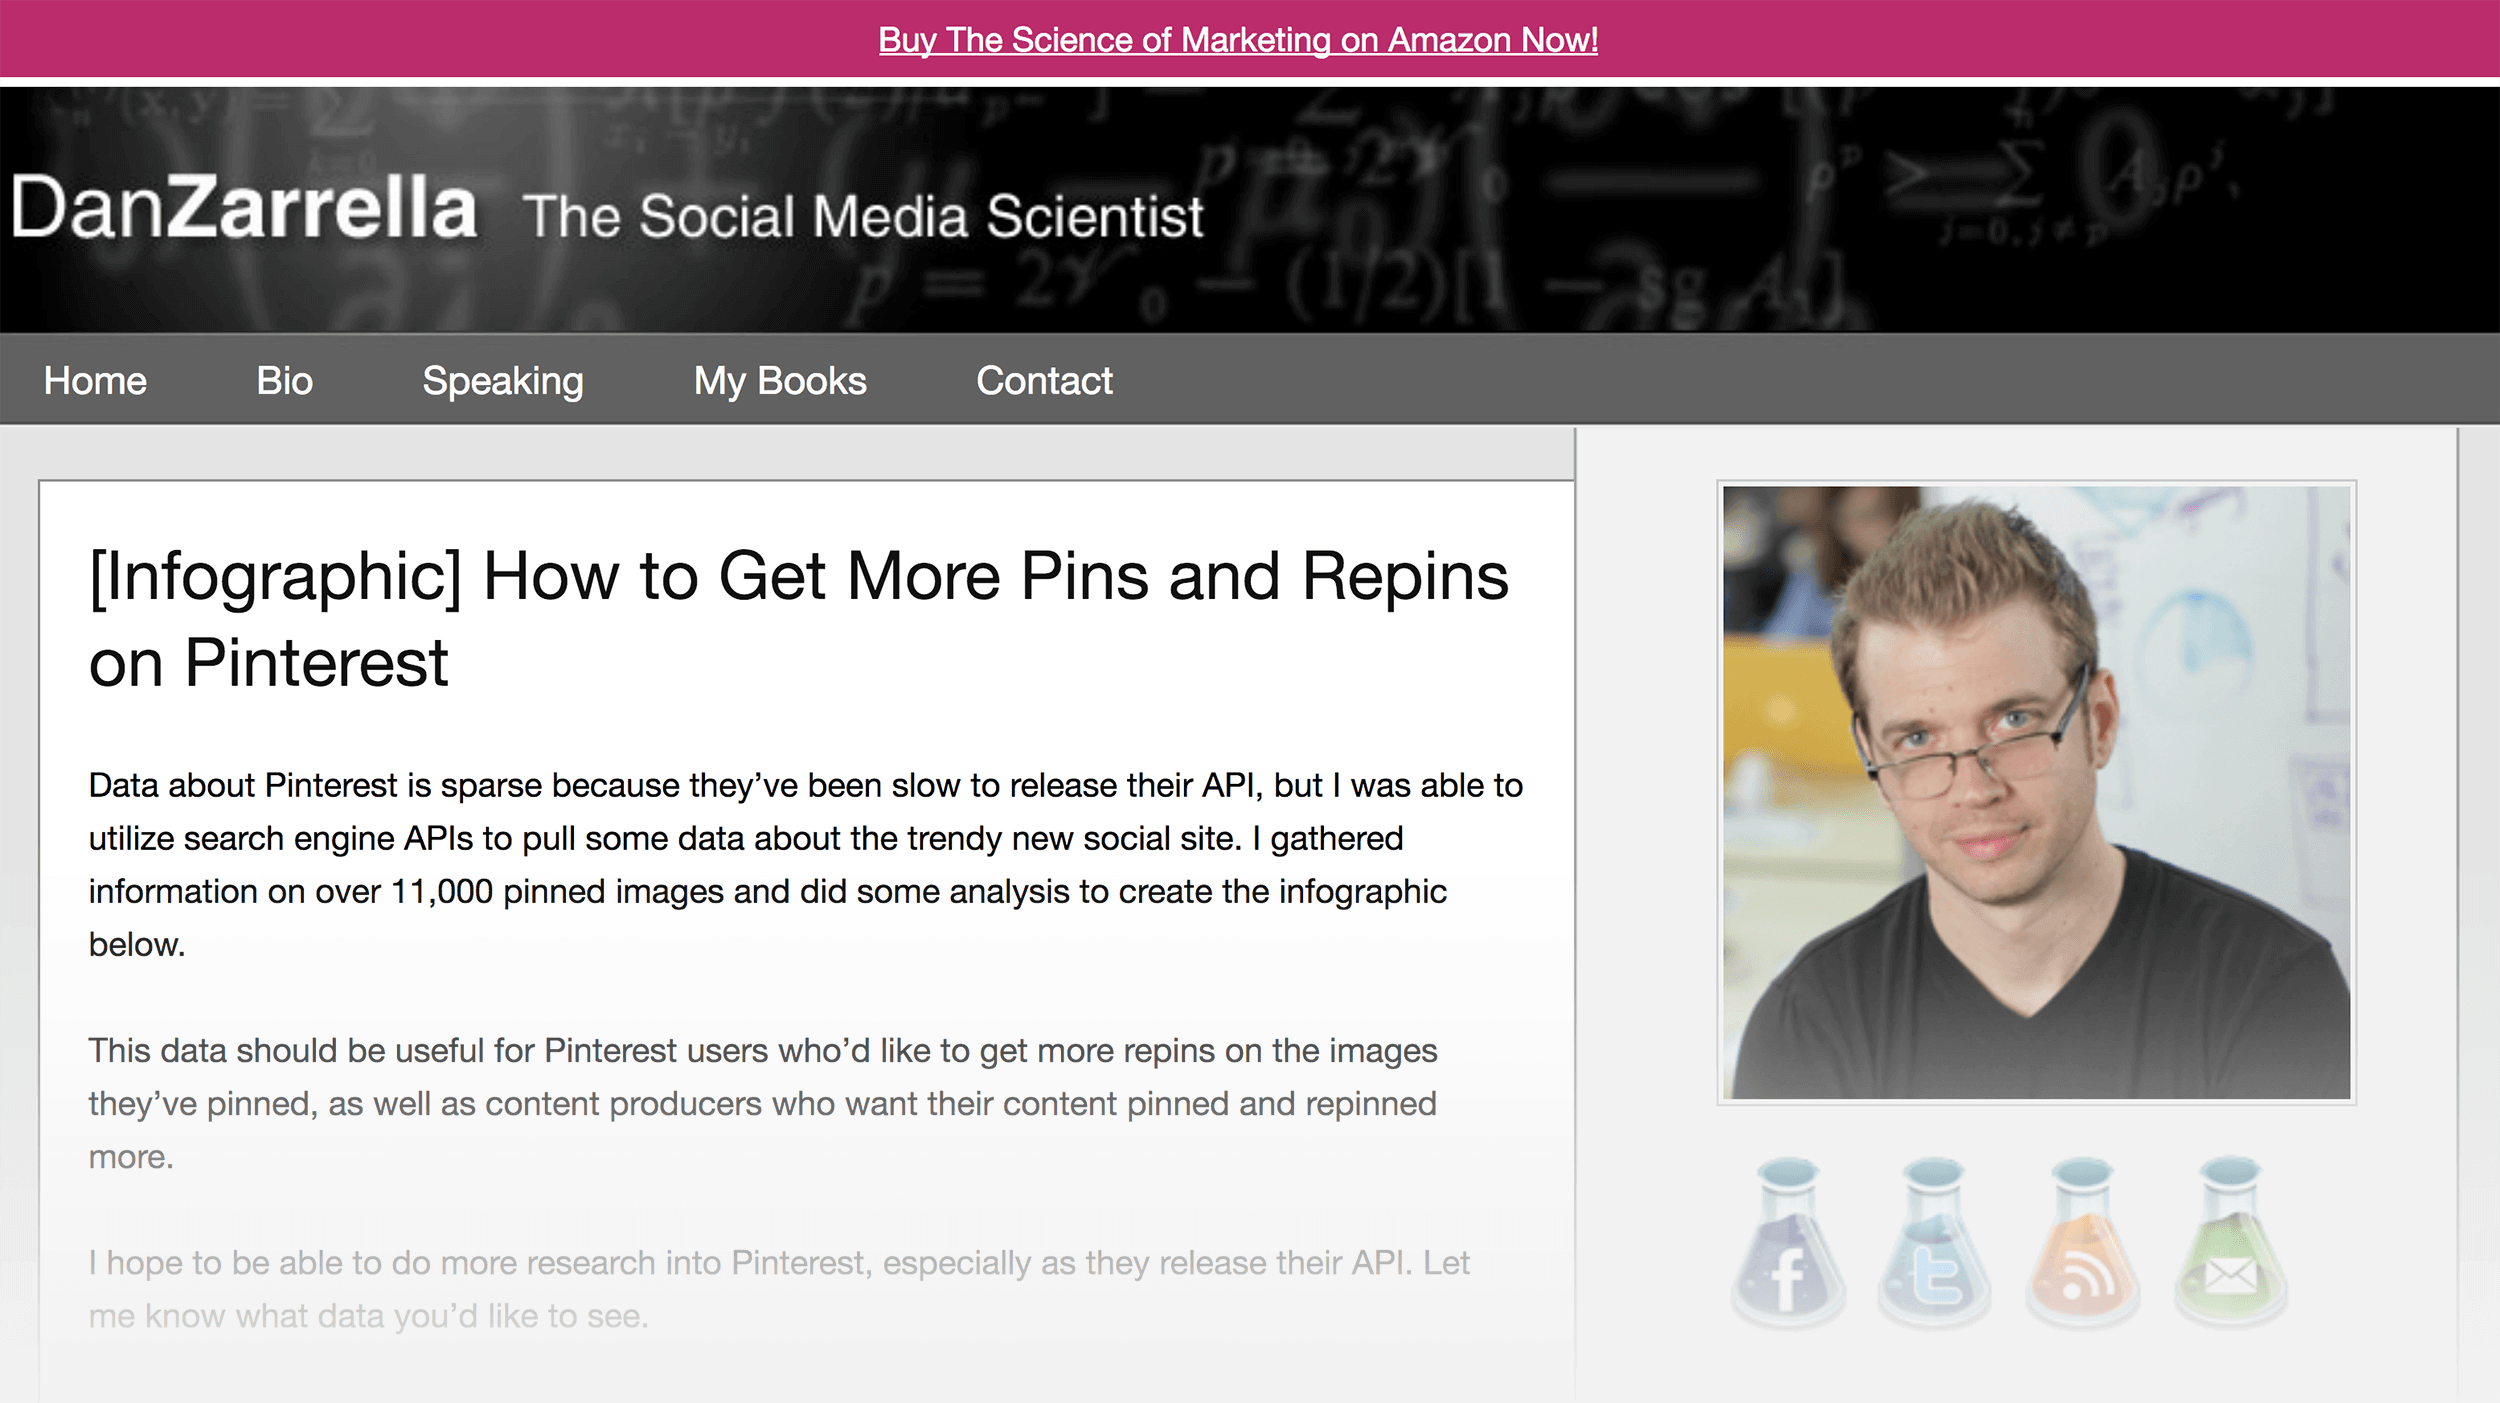 The Social Media Scientist